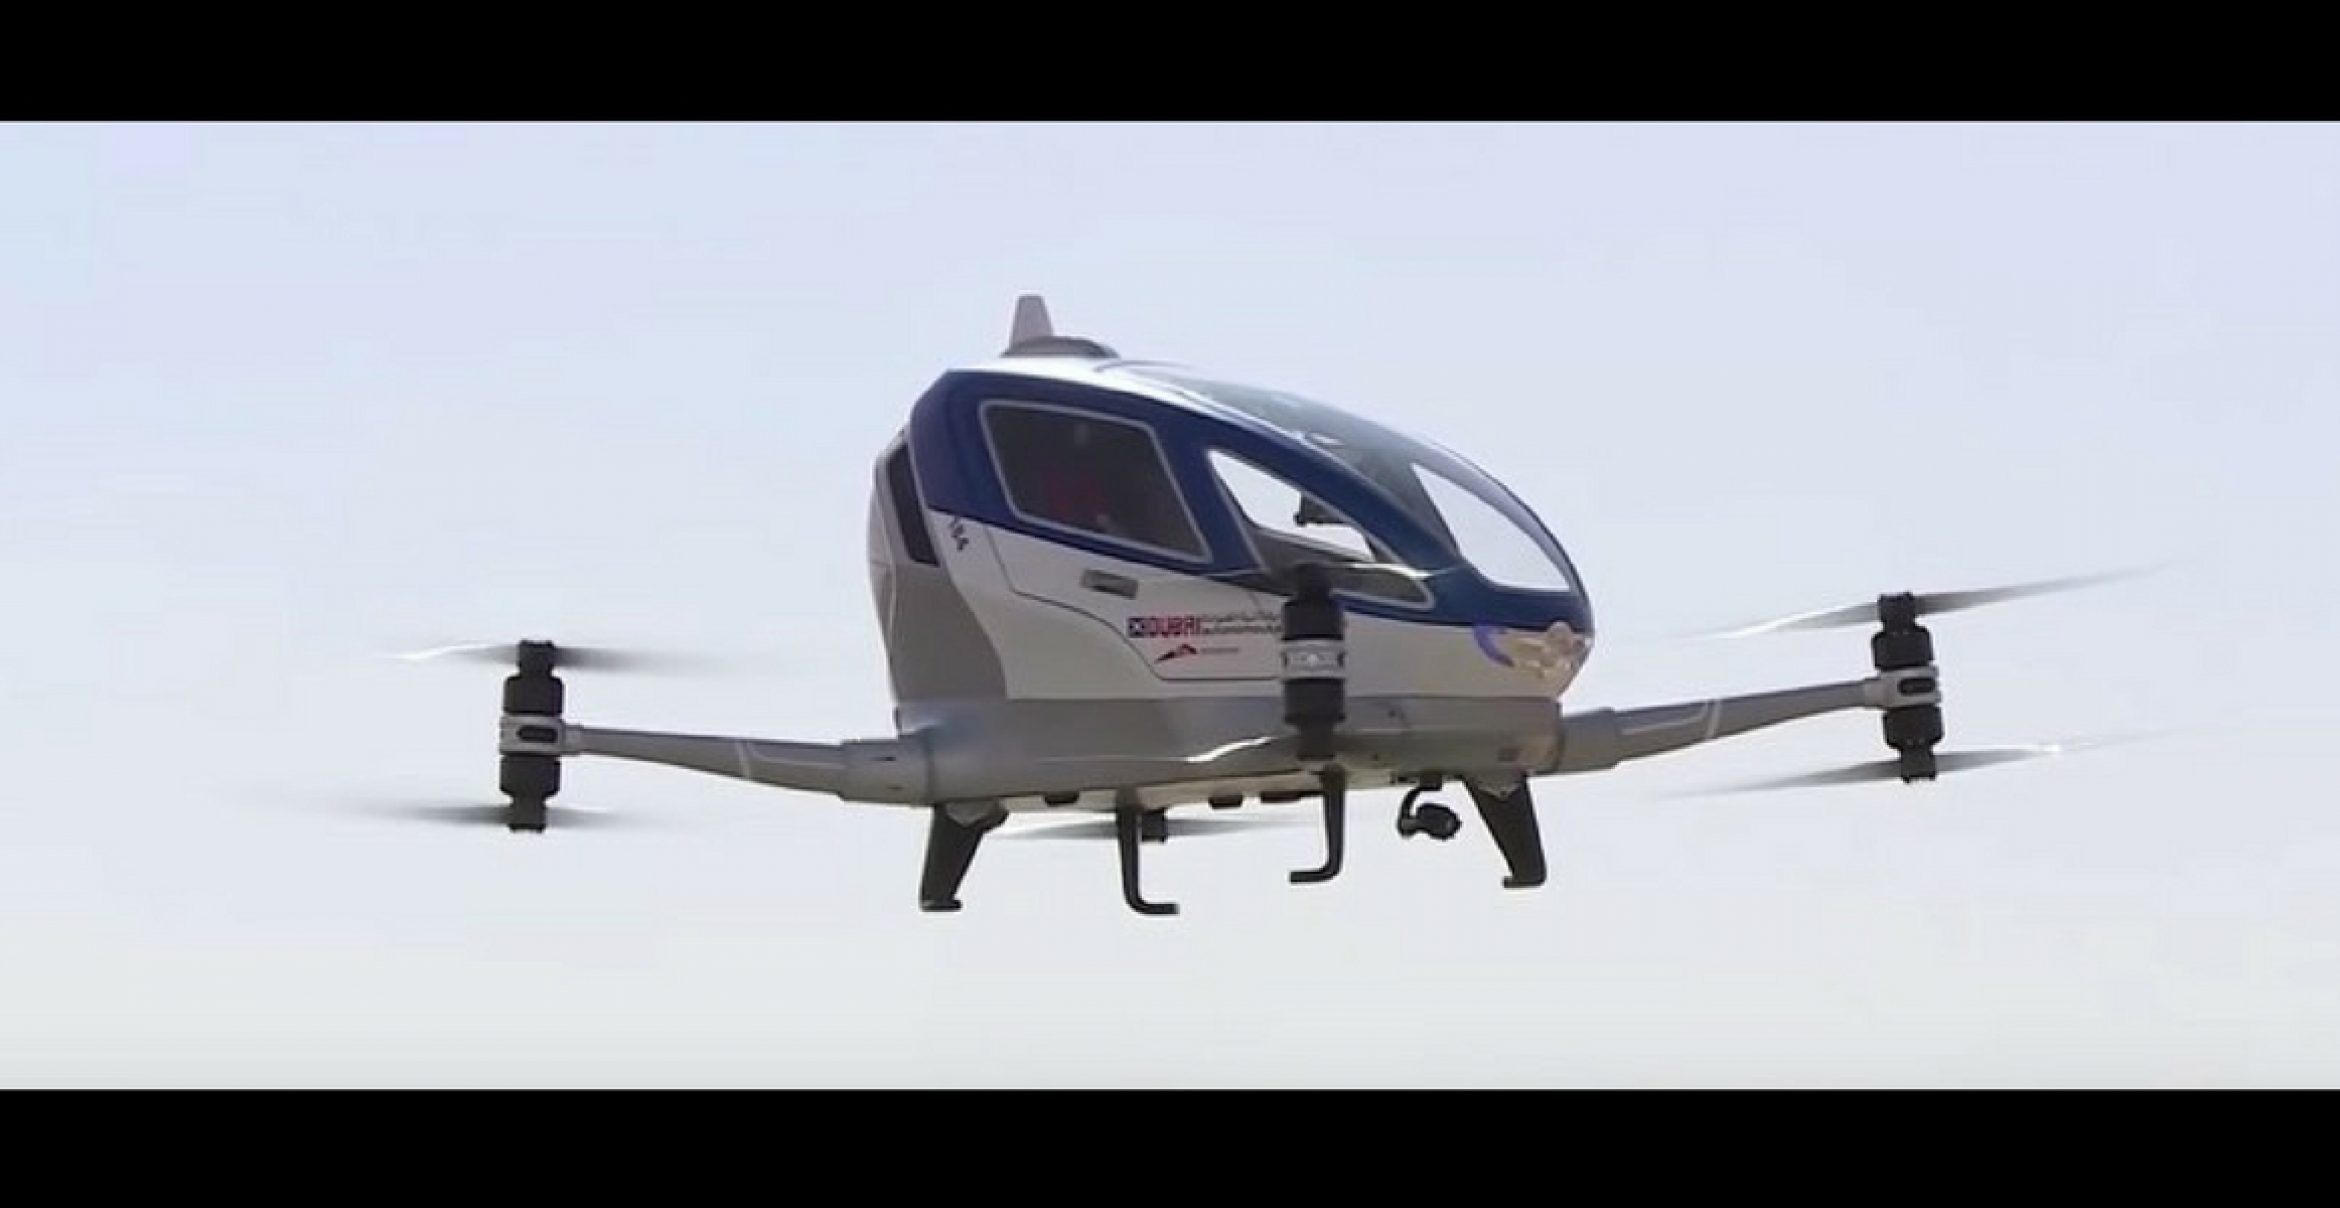 Willkommen in der Zukunft: In Dubai sollen ab Juli Taxi-Drohnen zur Verfügung stehen